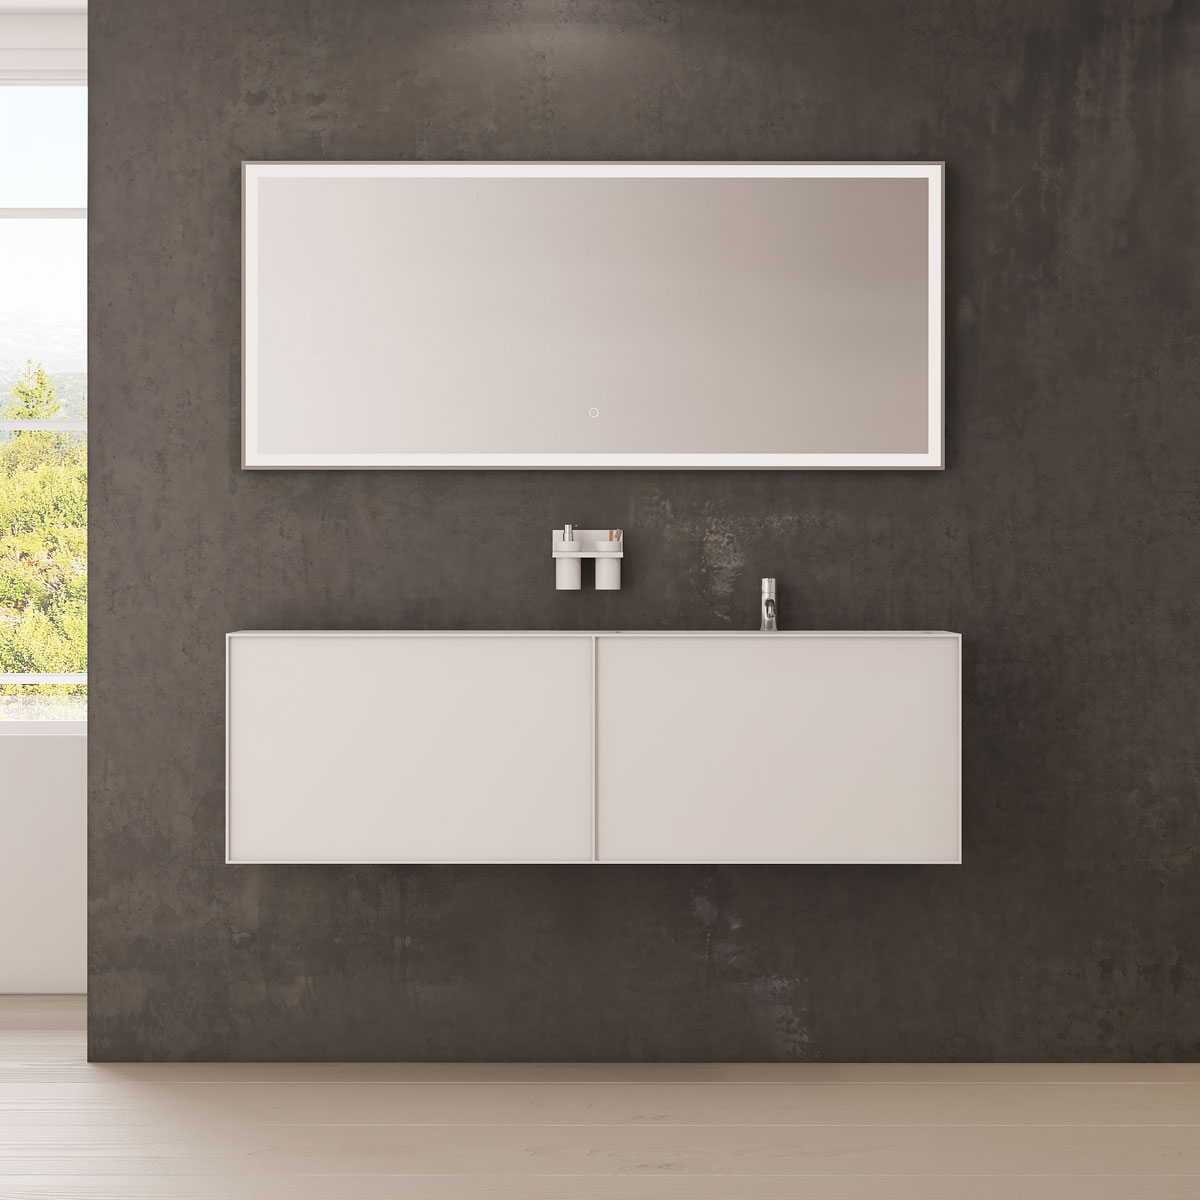 Nexø 160 kabinet med højre vask image